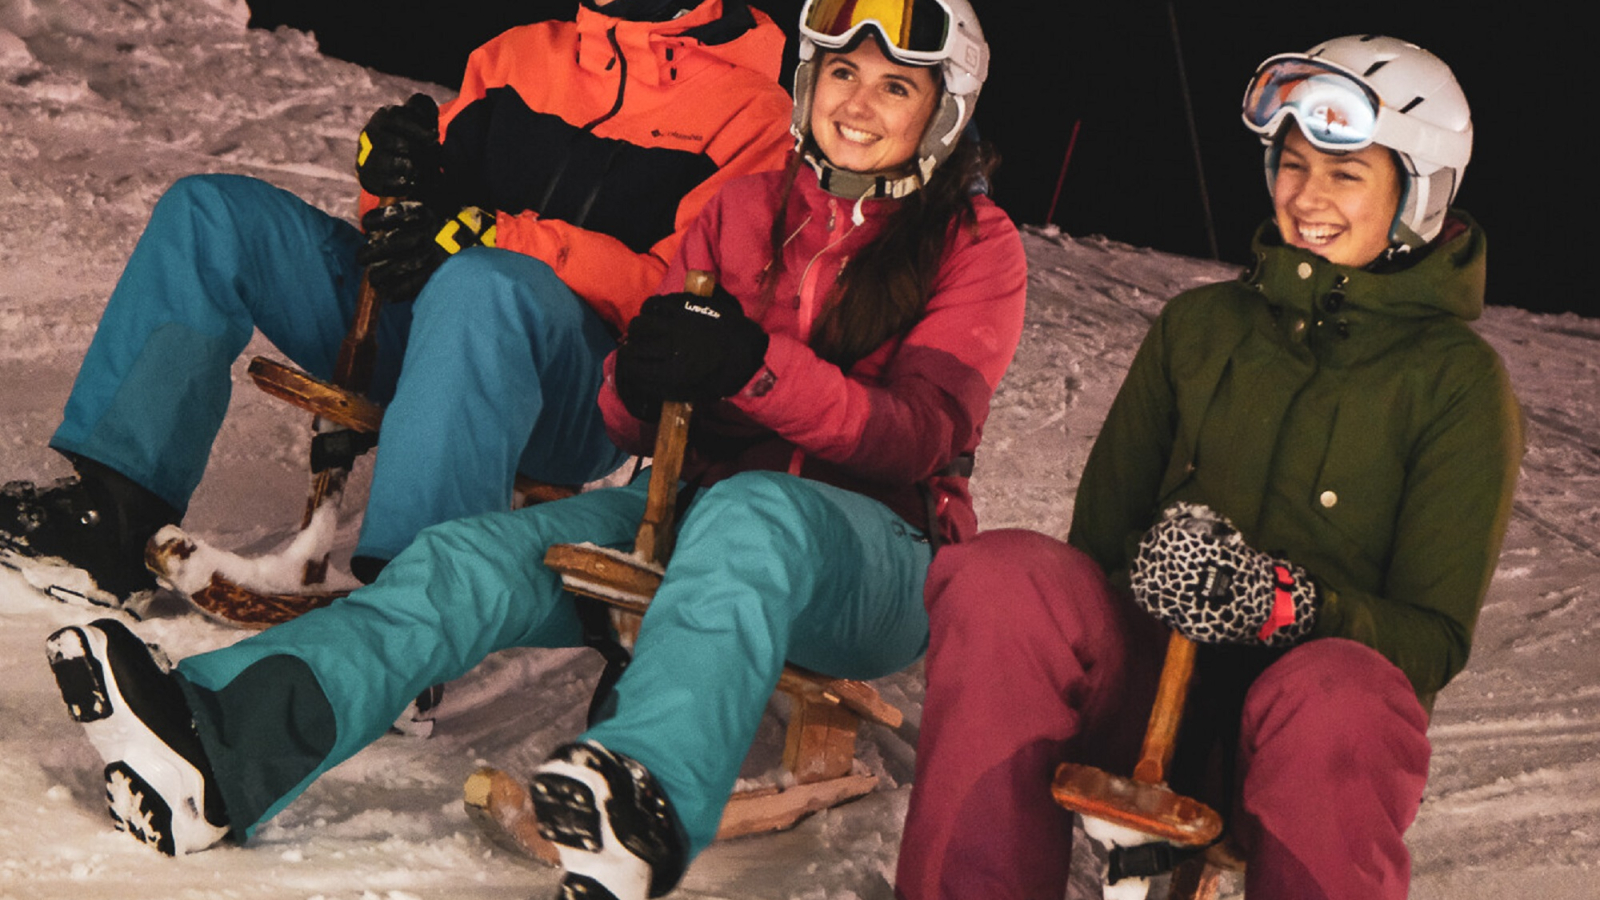 Un groupe d'amis pratiquant les glisses alternatives sur les pistes ouvertes en nocturne du domaine de ski alpin  du Grand-Bornand